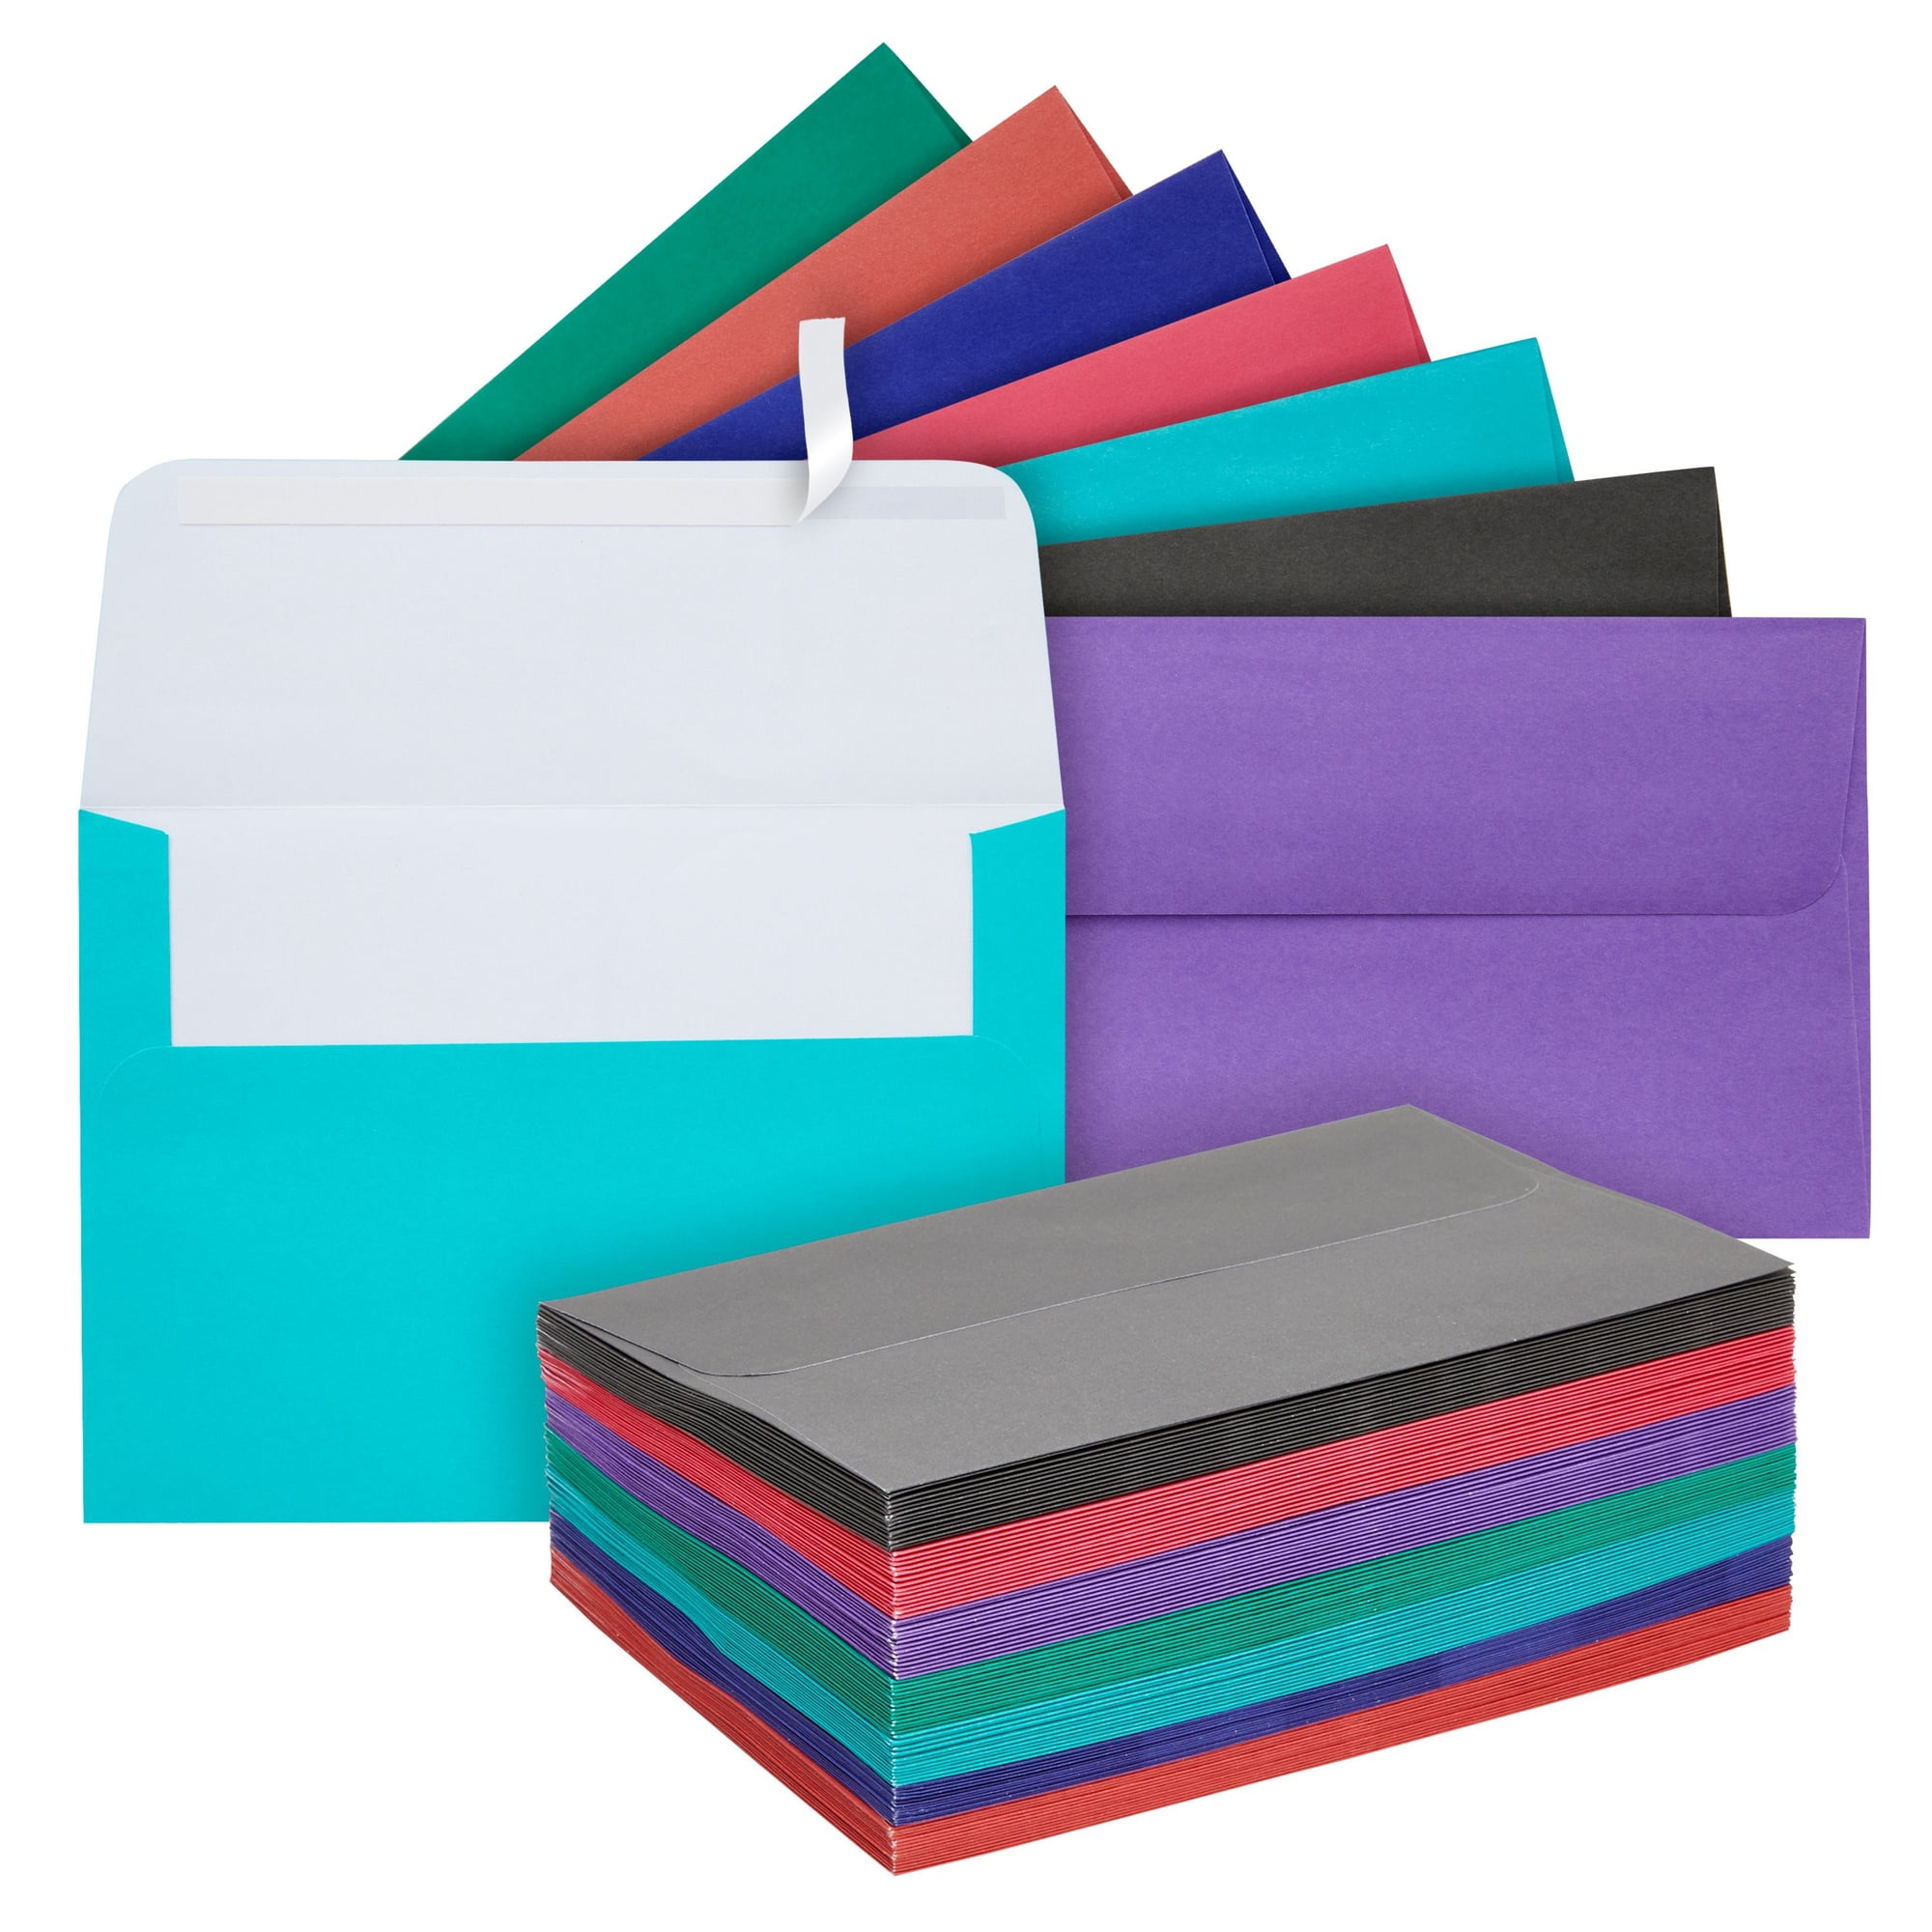 Enveloppes A5, pack de 6 - coloris assortis